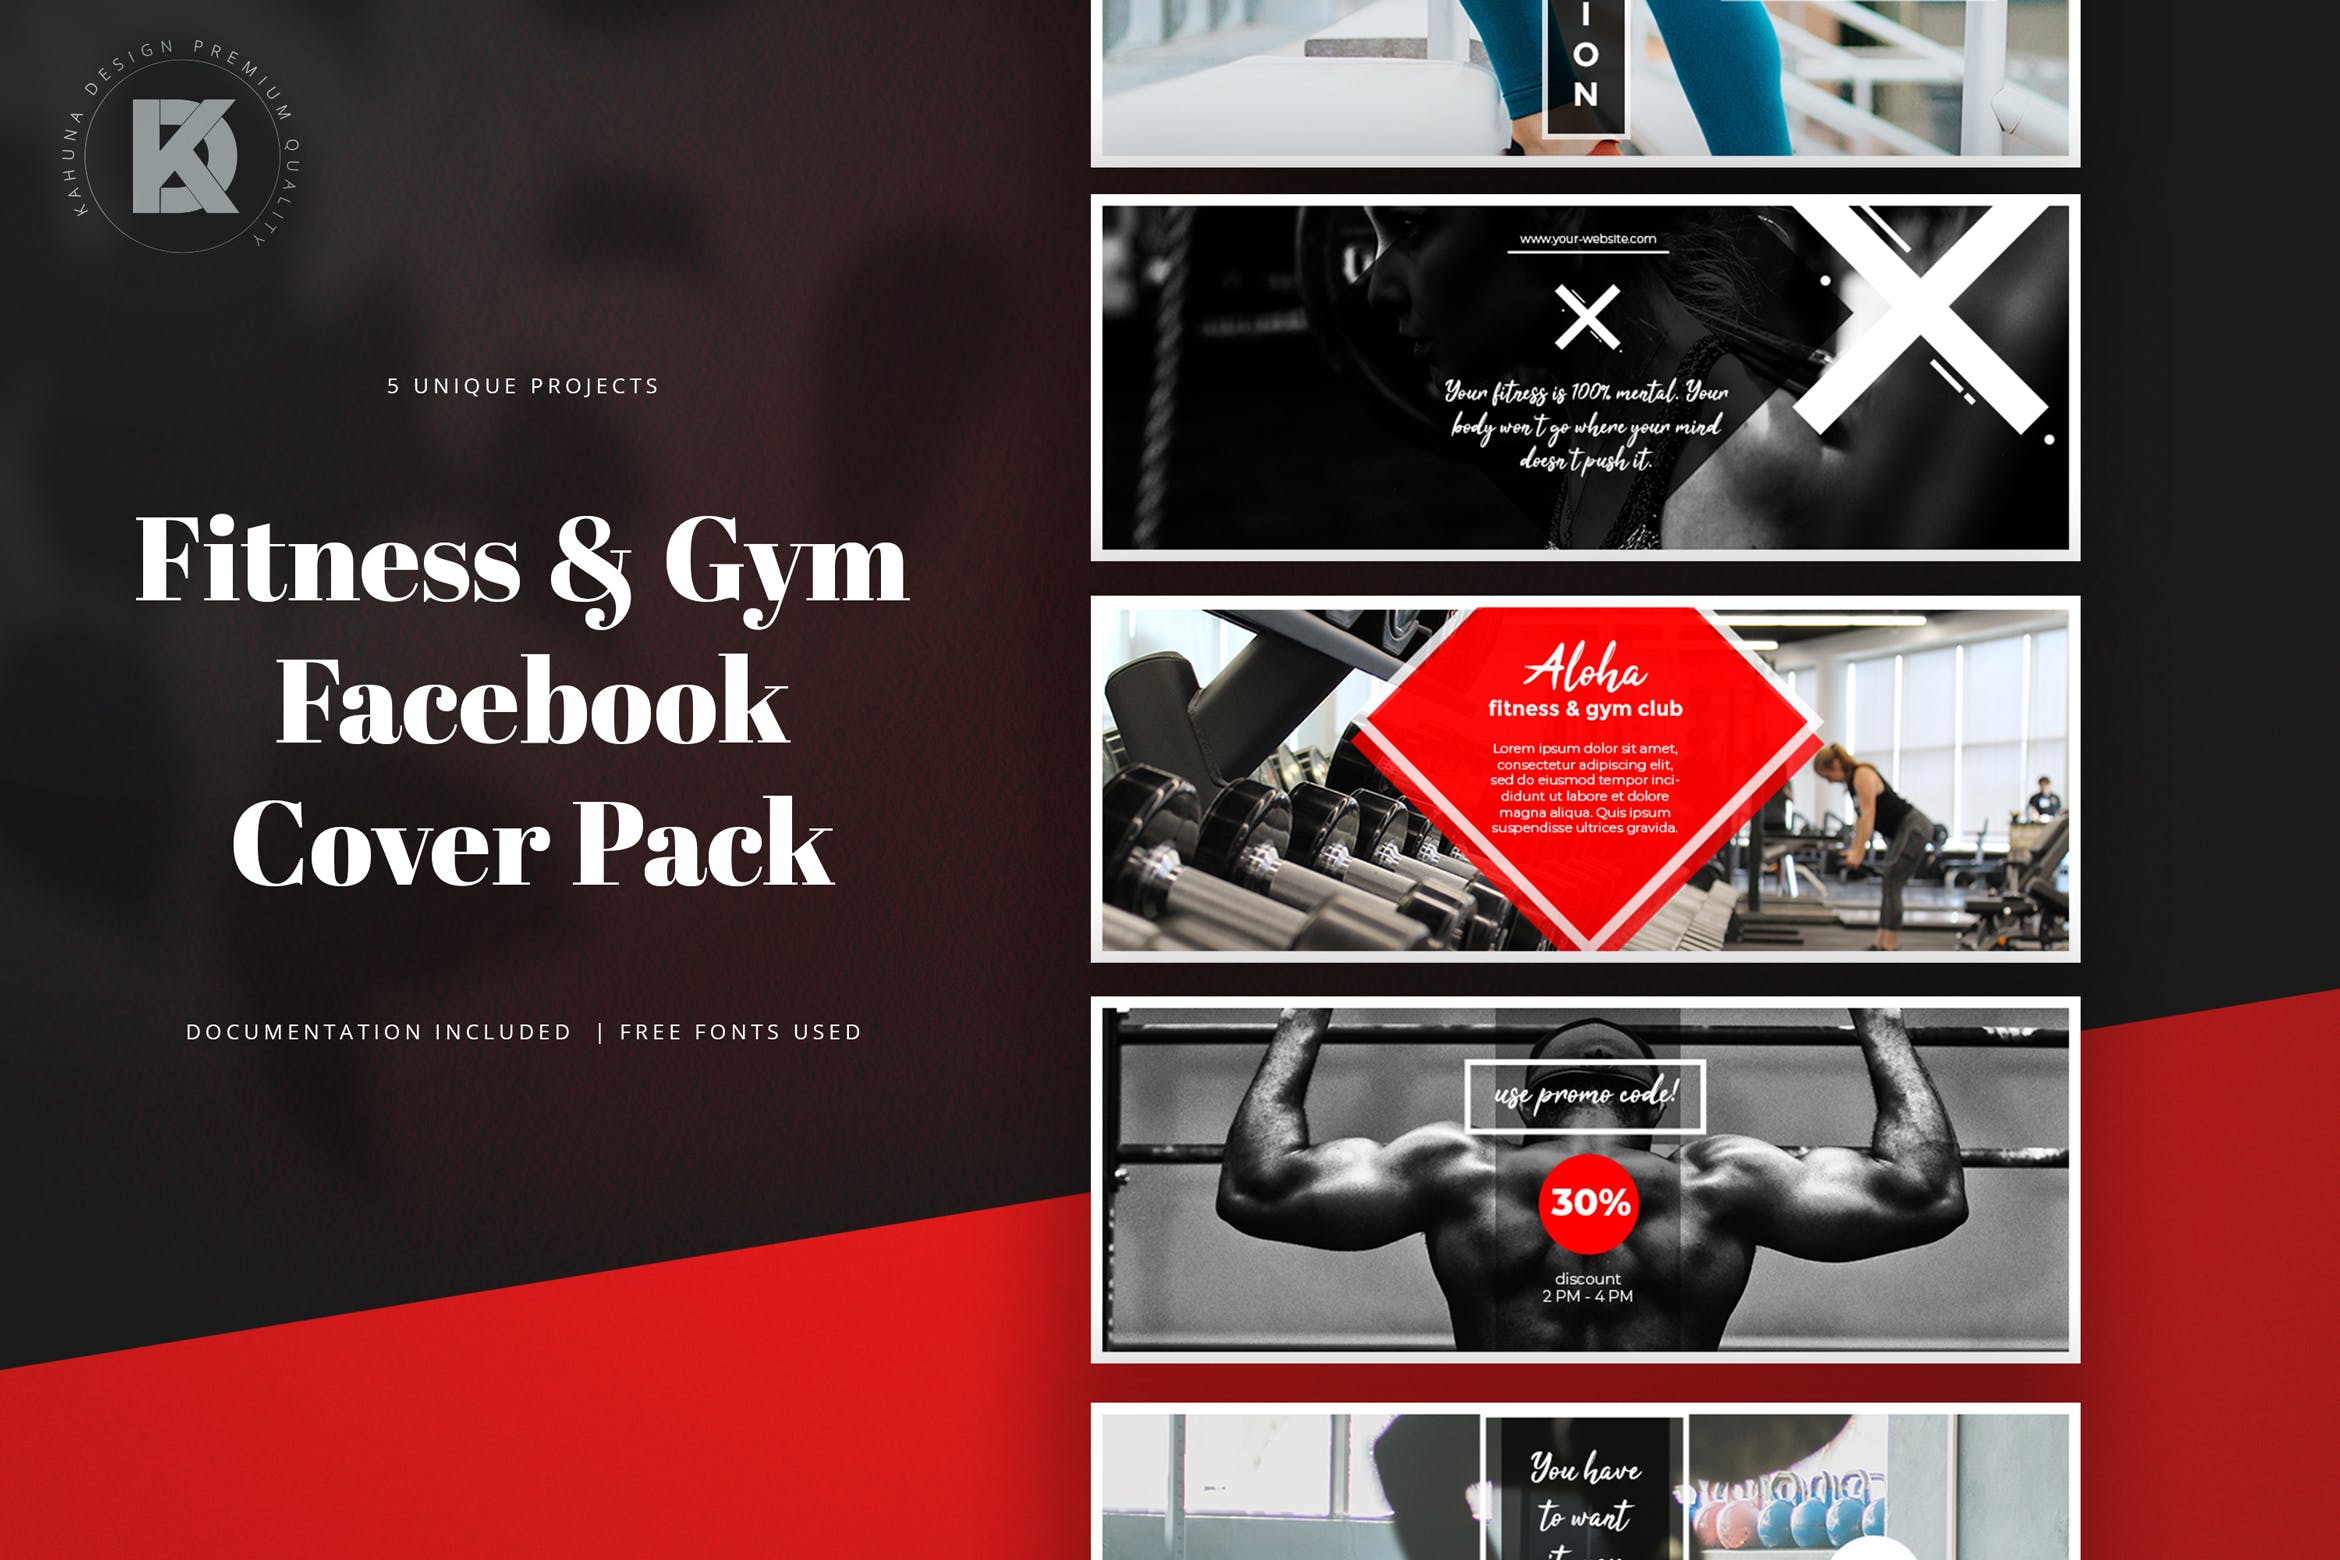 健身运动品牌Facebook封面设计模板第一素材精选 Fitness & Gym Facebook Cover Pack插图